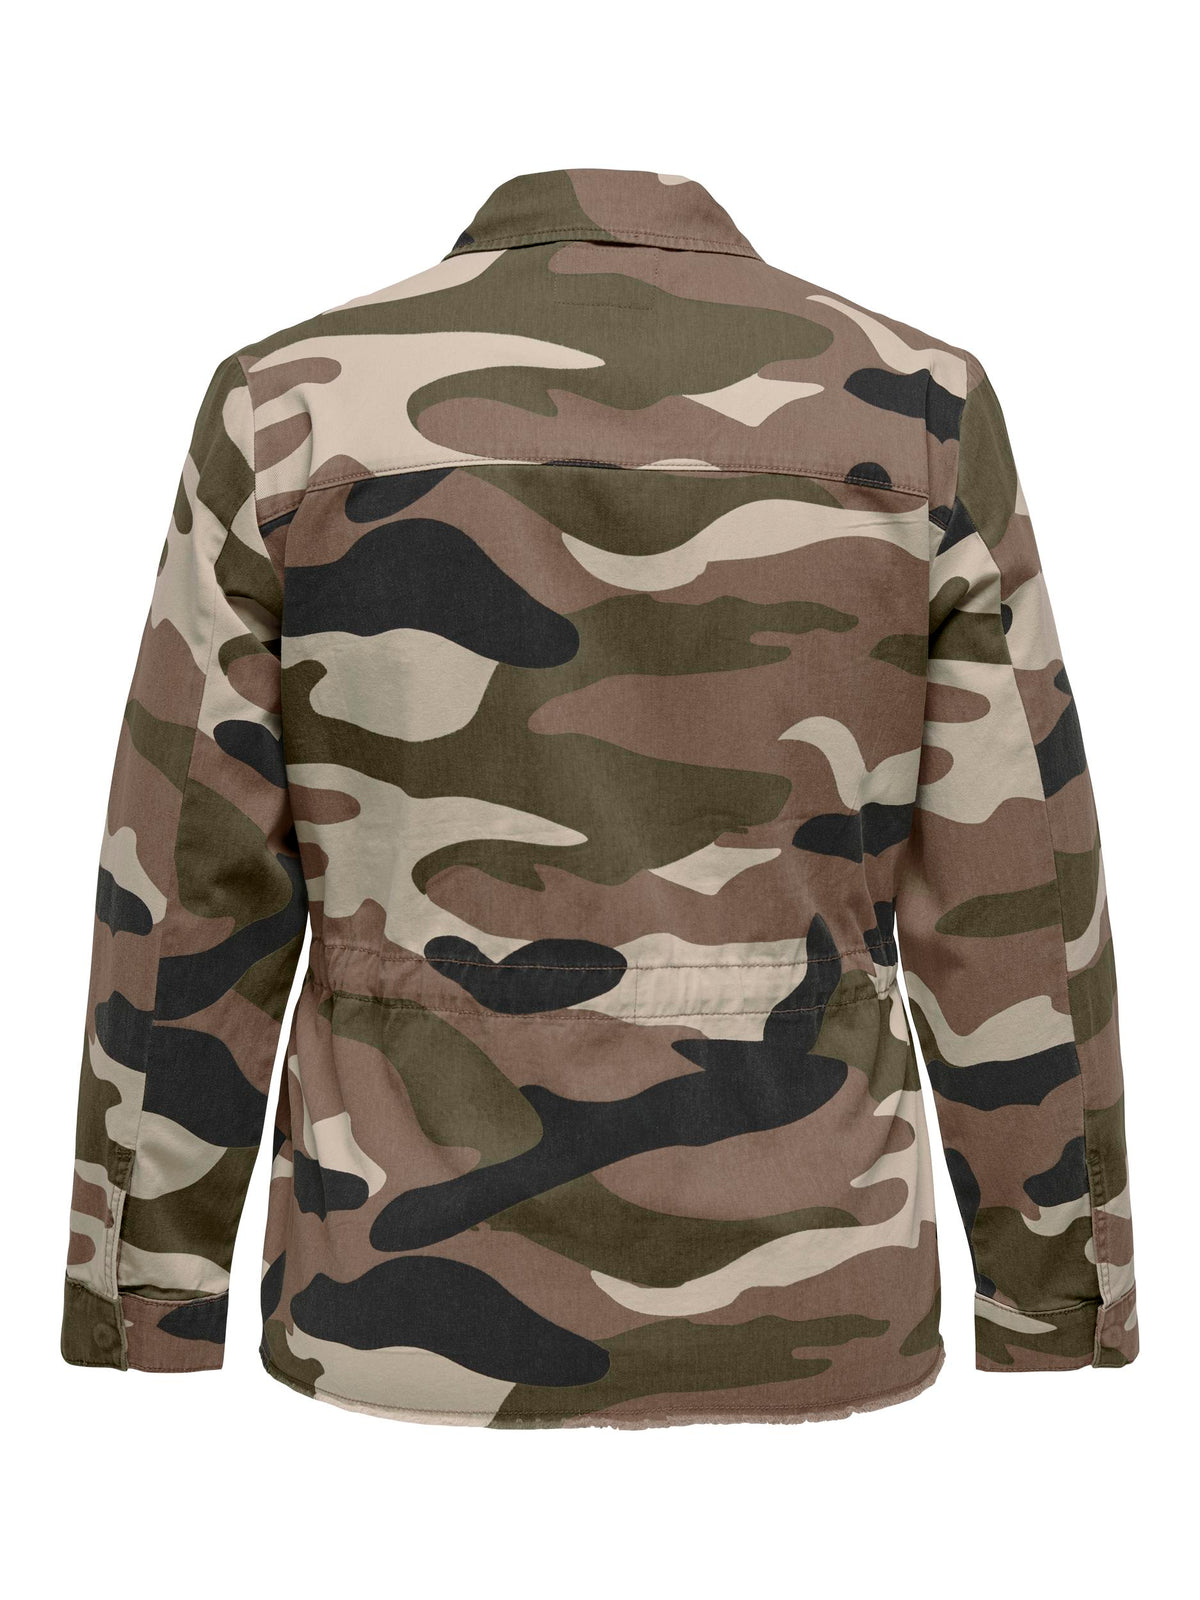 Only Carmakoma Gekko Camouflage Jacket